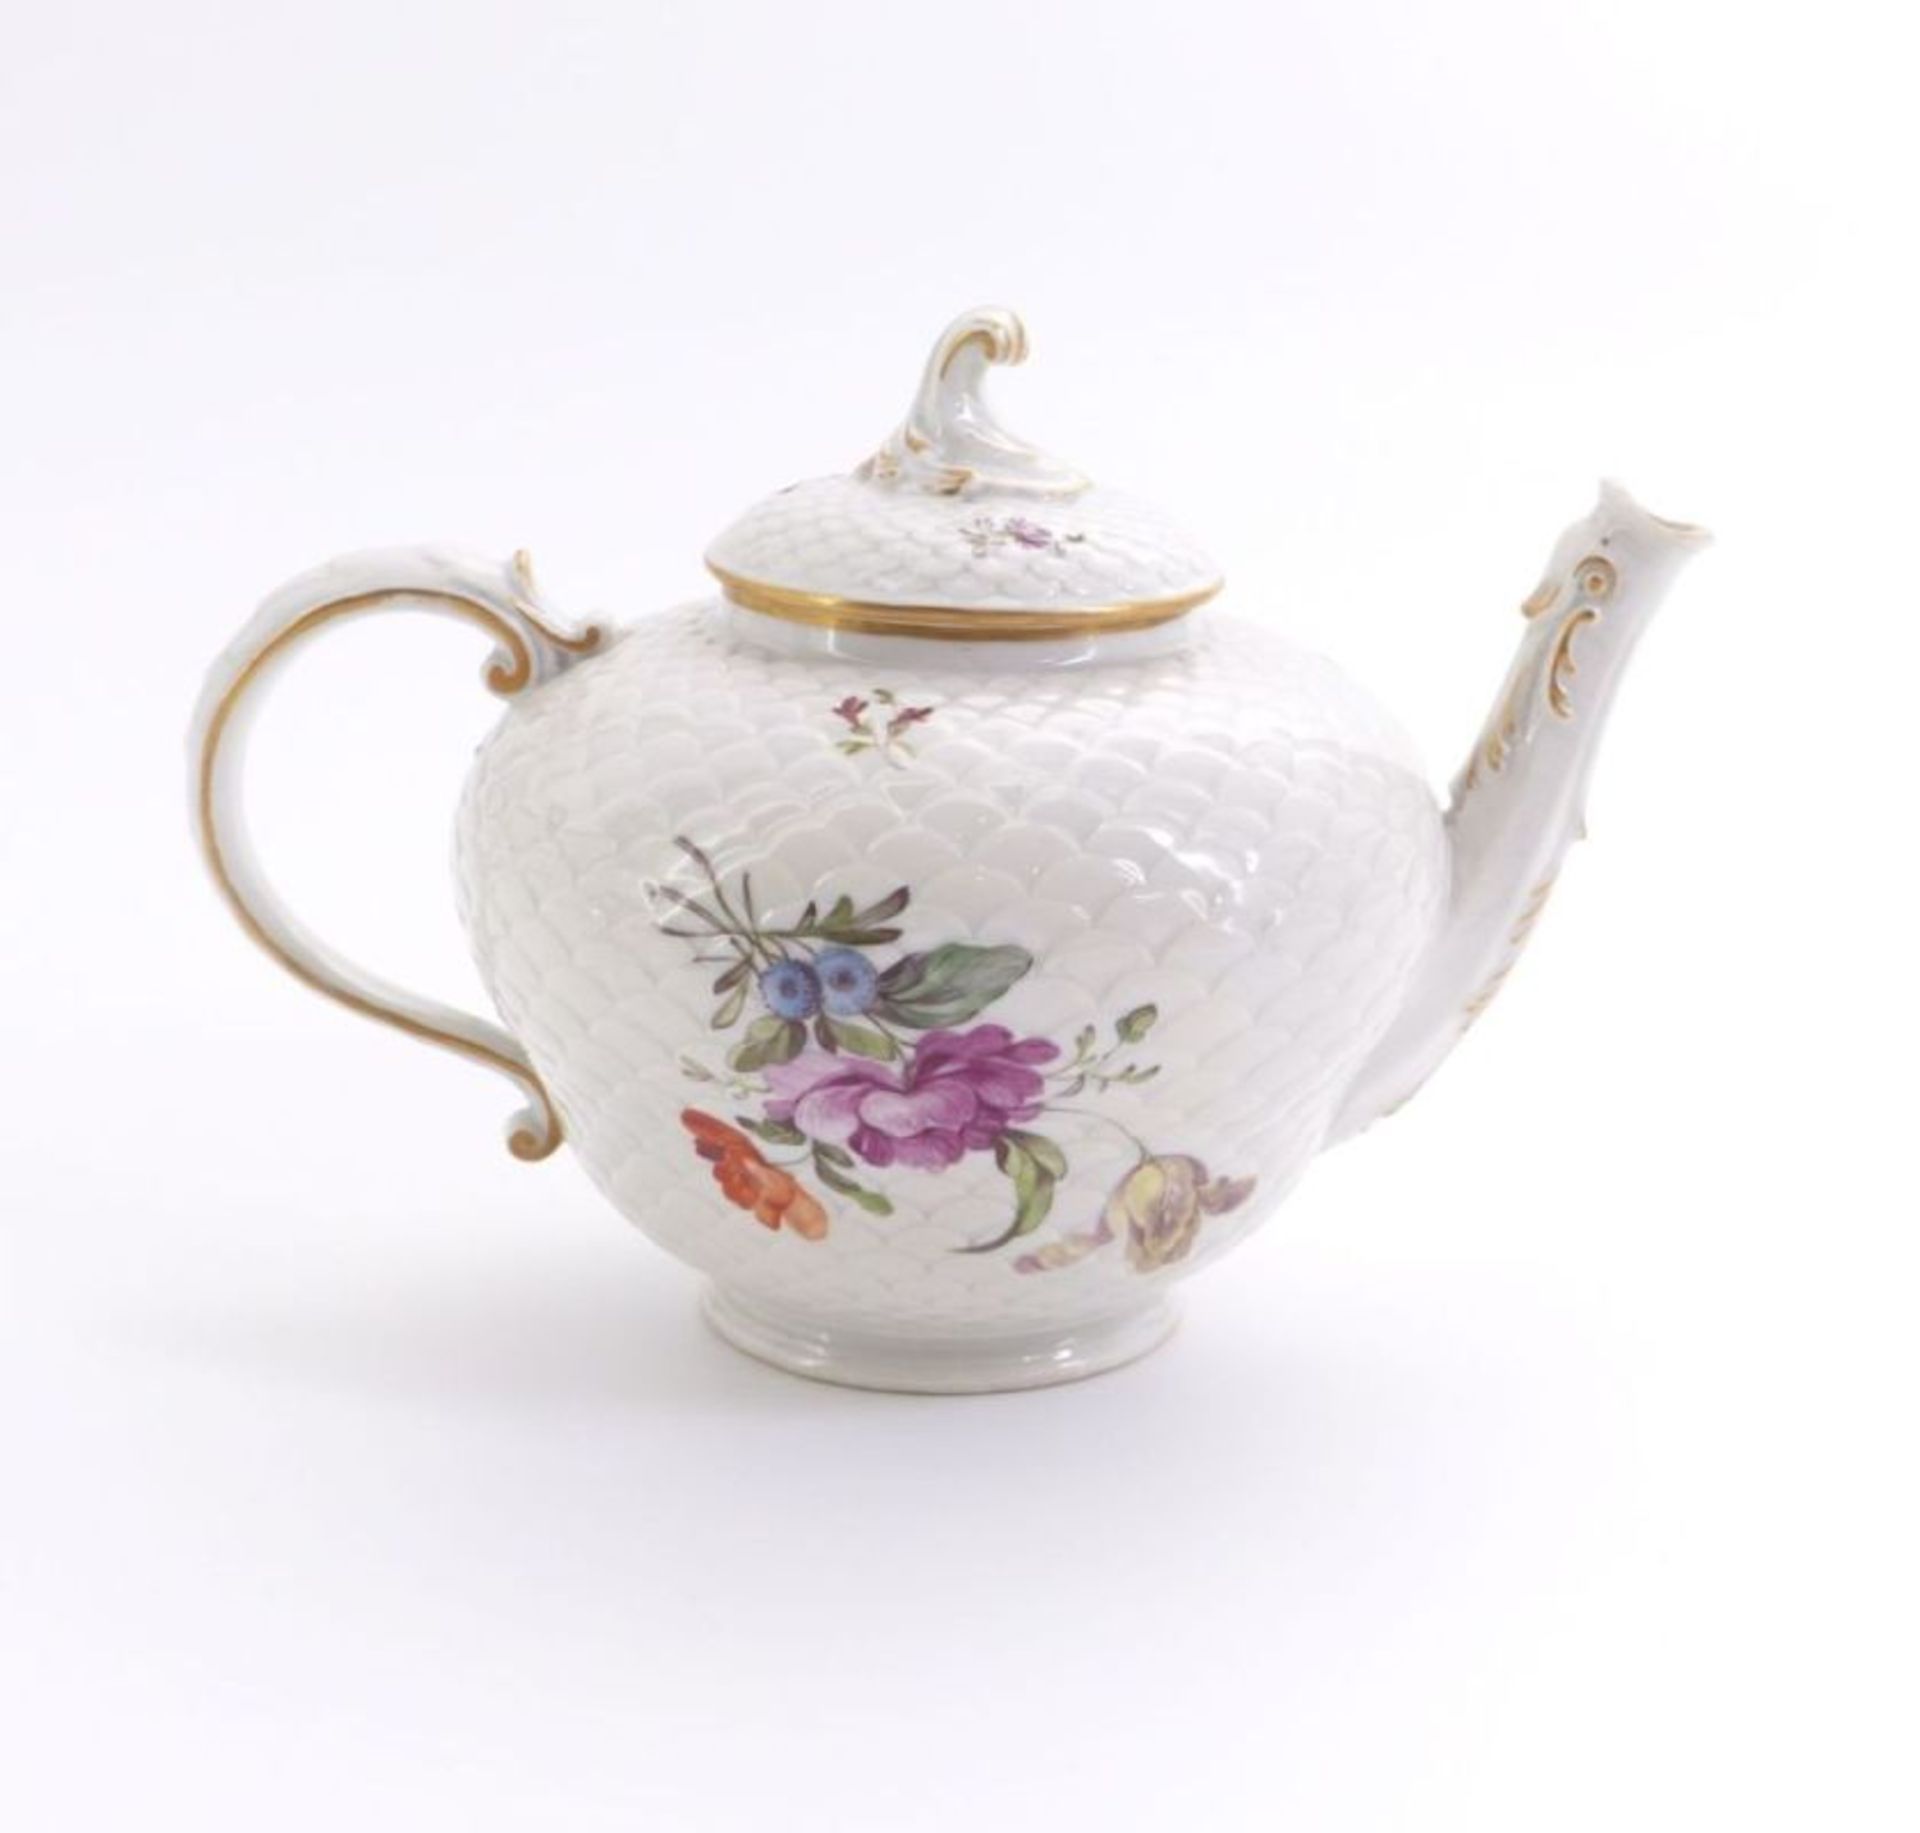 Kleine Teekanne mit Blumendekor, Ludwigsburg, 2. H. 18. Jh. - Bild 2 aus 3